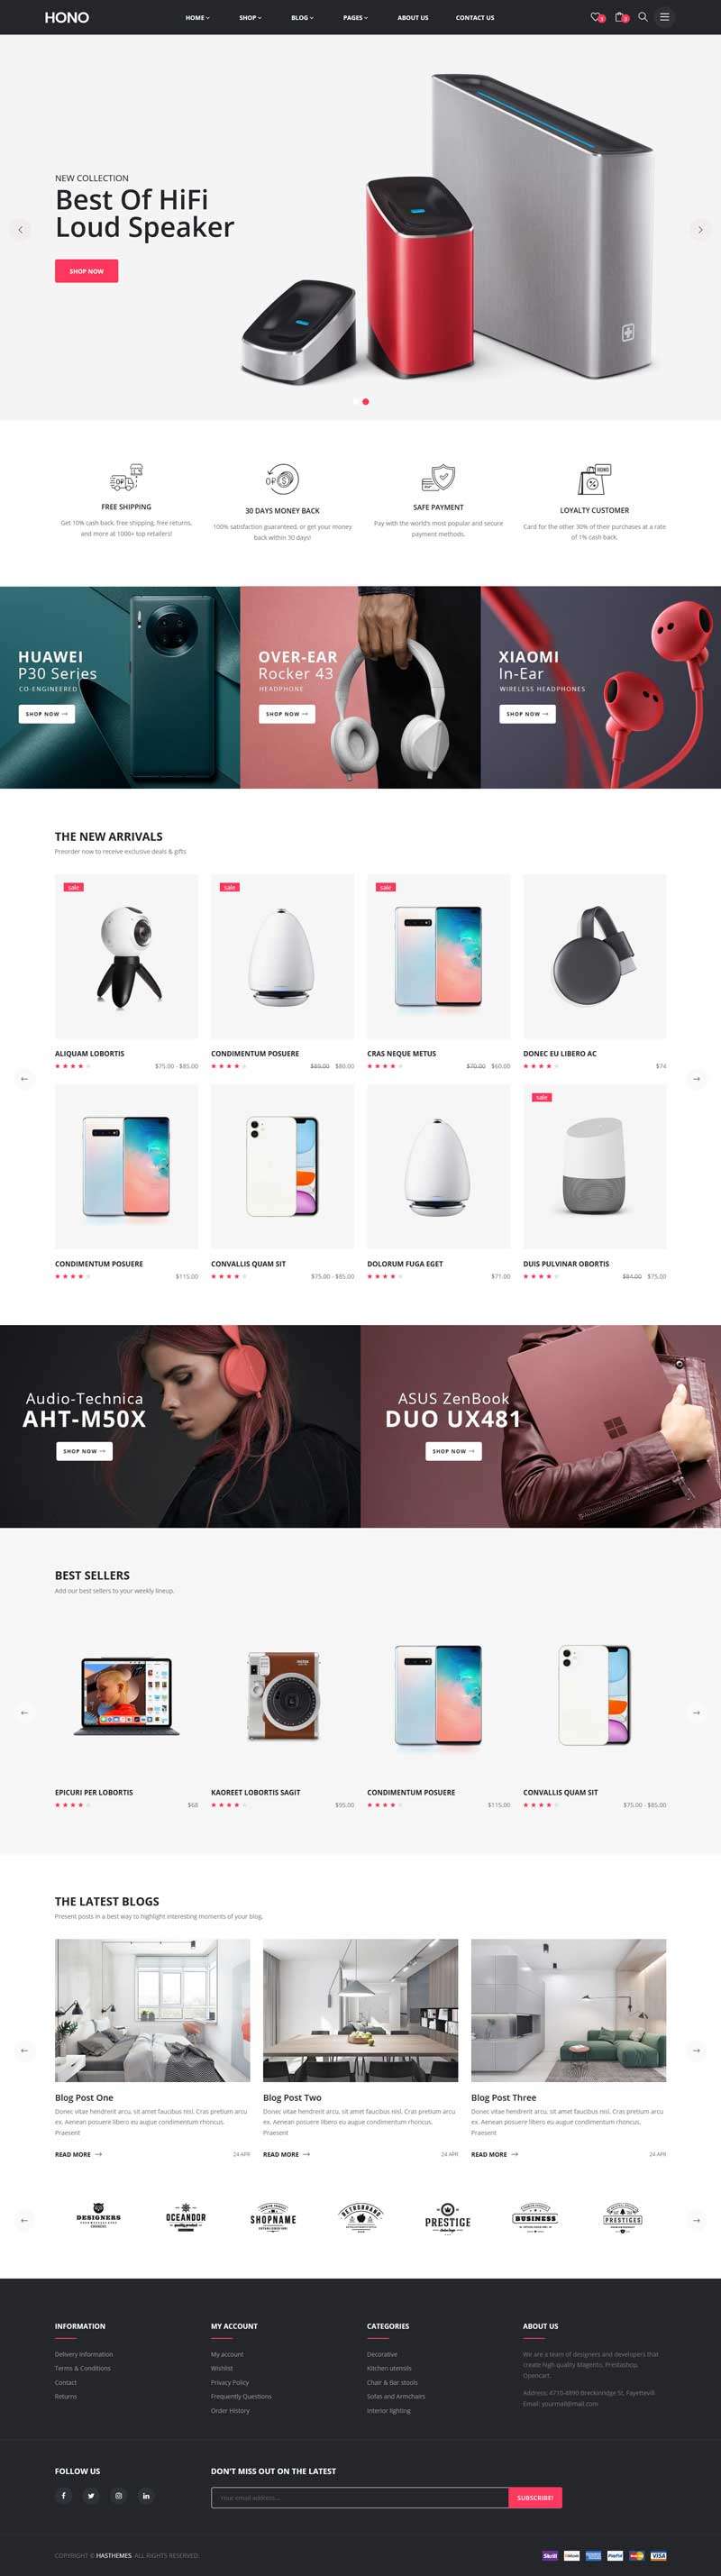 響應設計綜合商品購物網站HTML模板7205